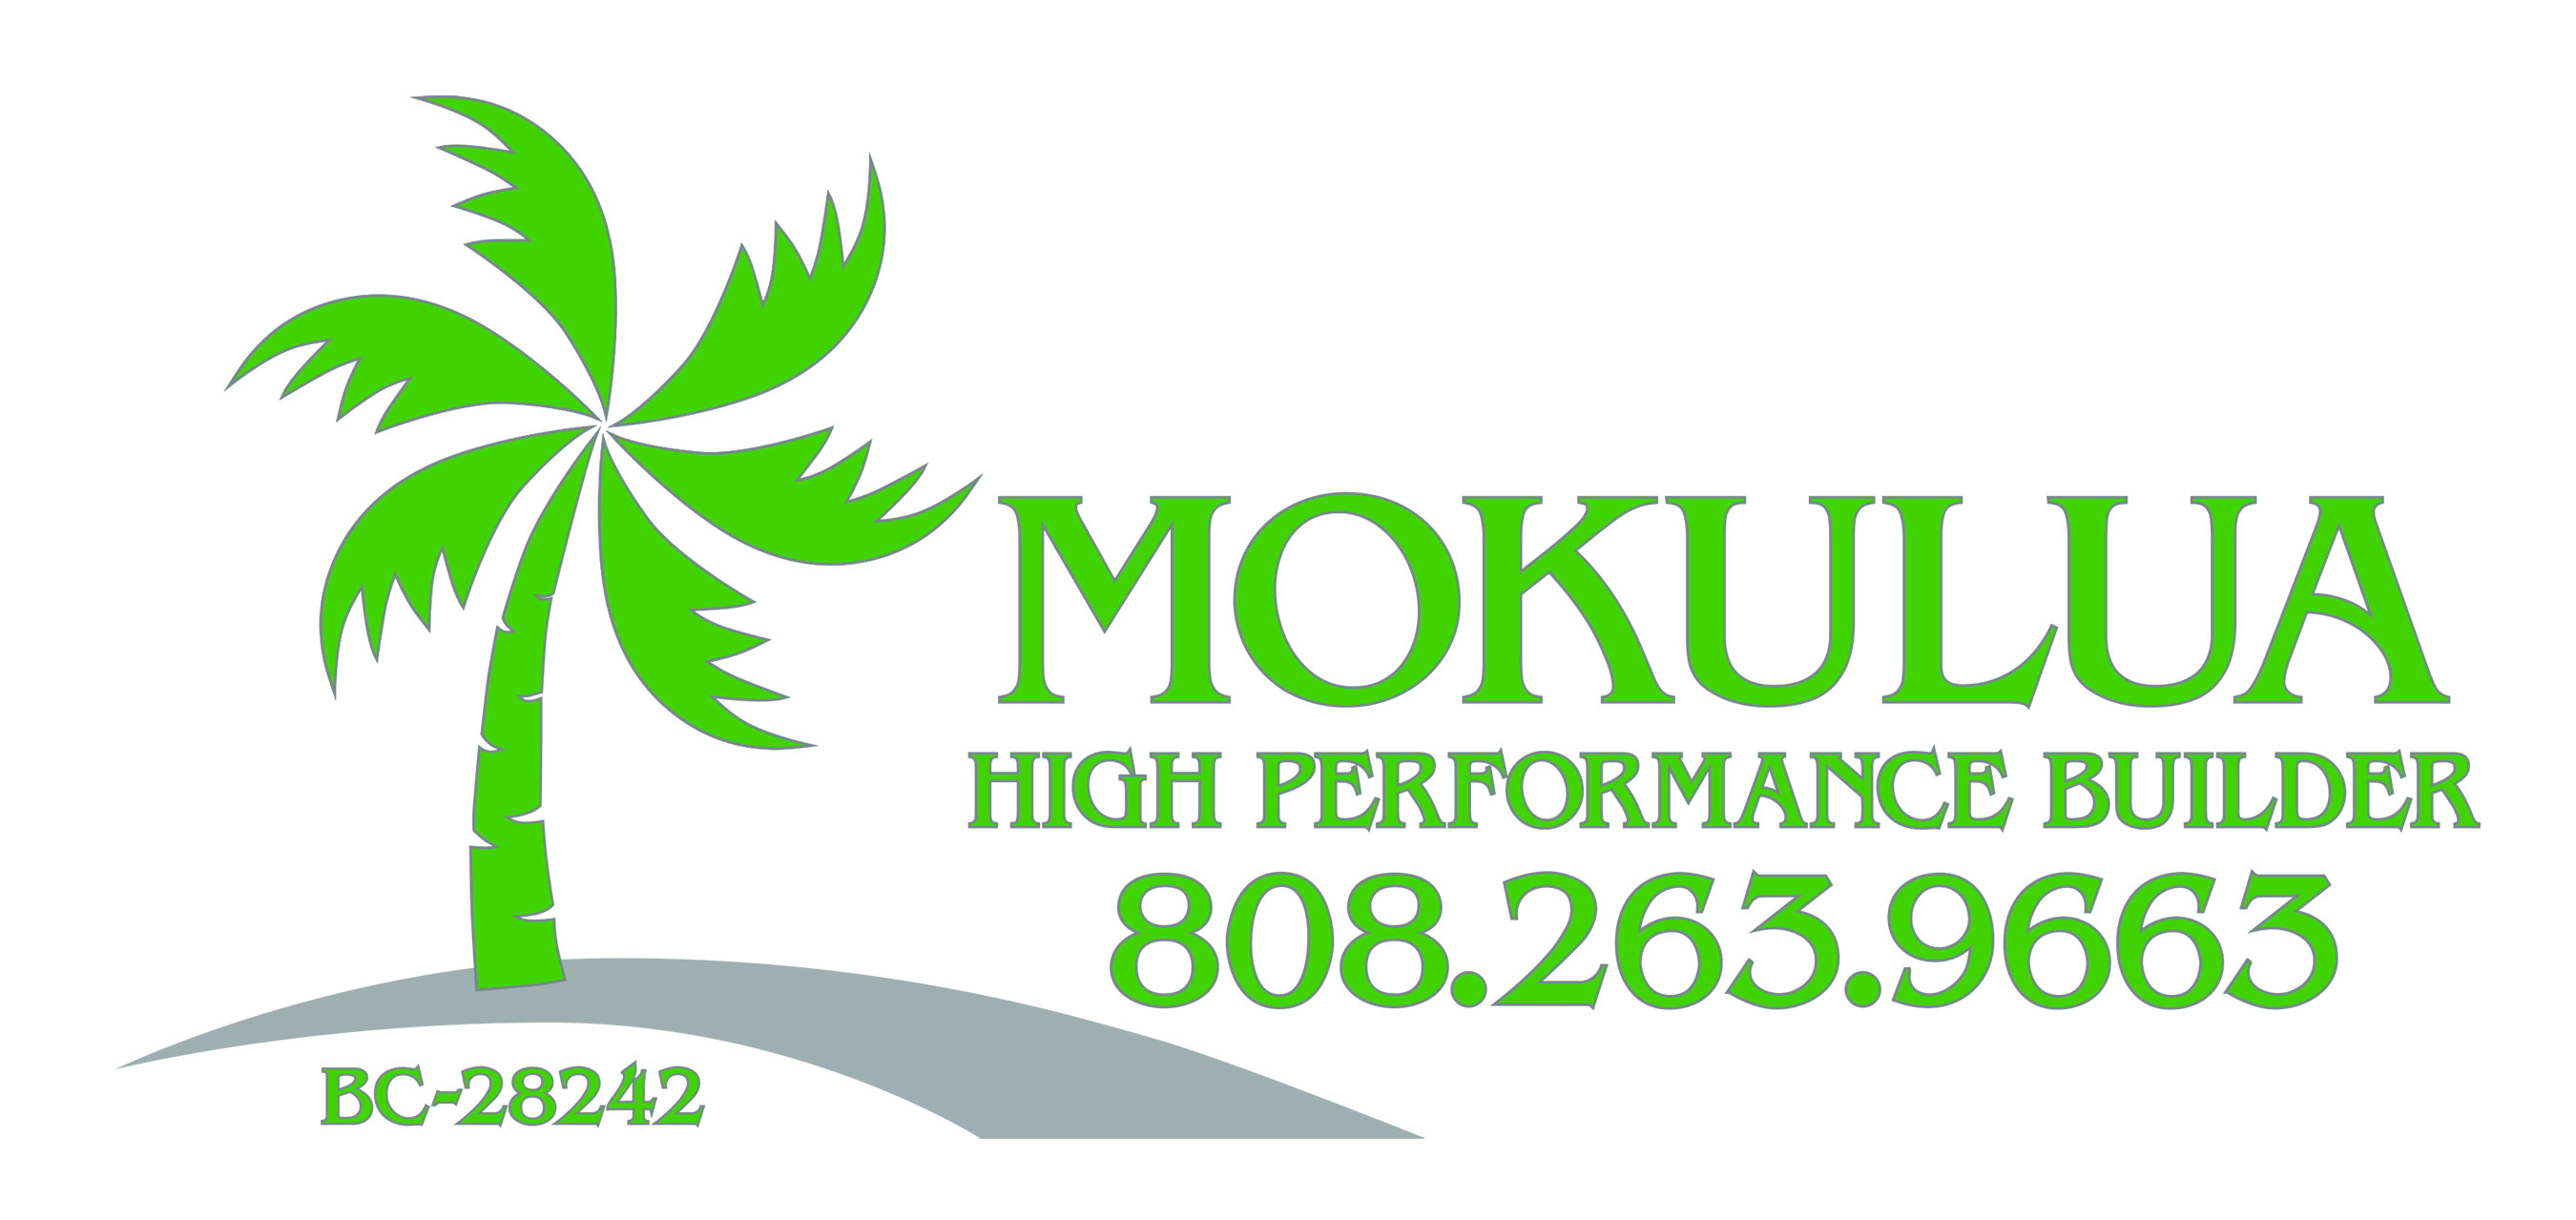 Mokulua Woodworking, LTD. company logo